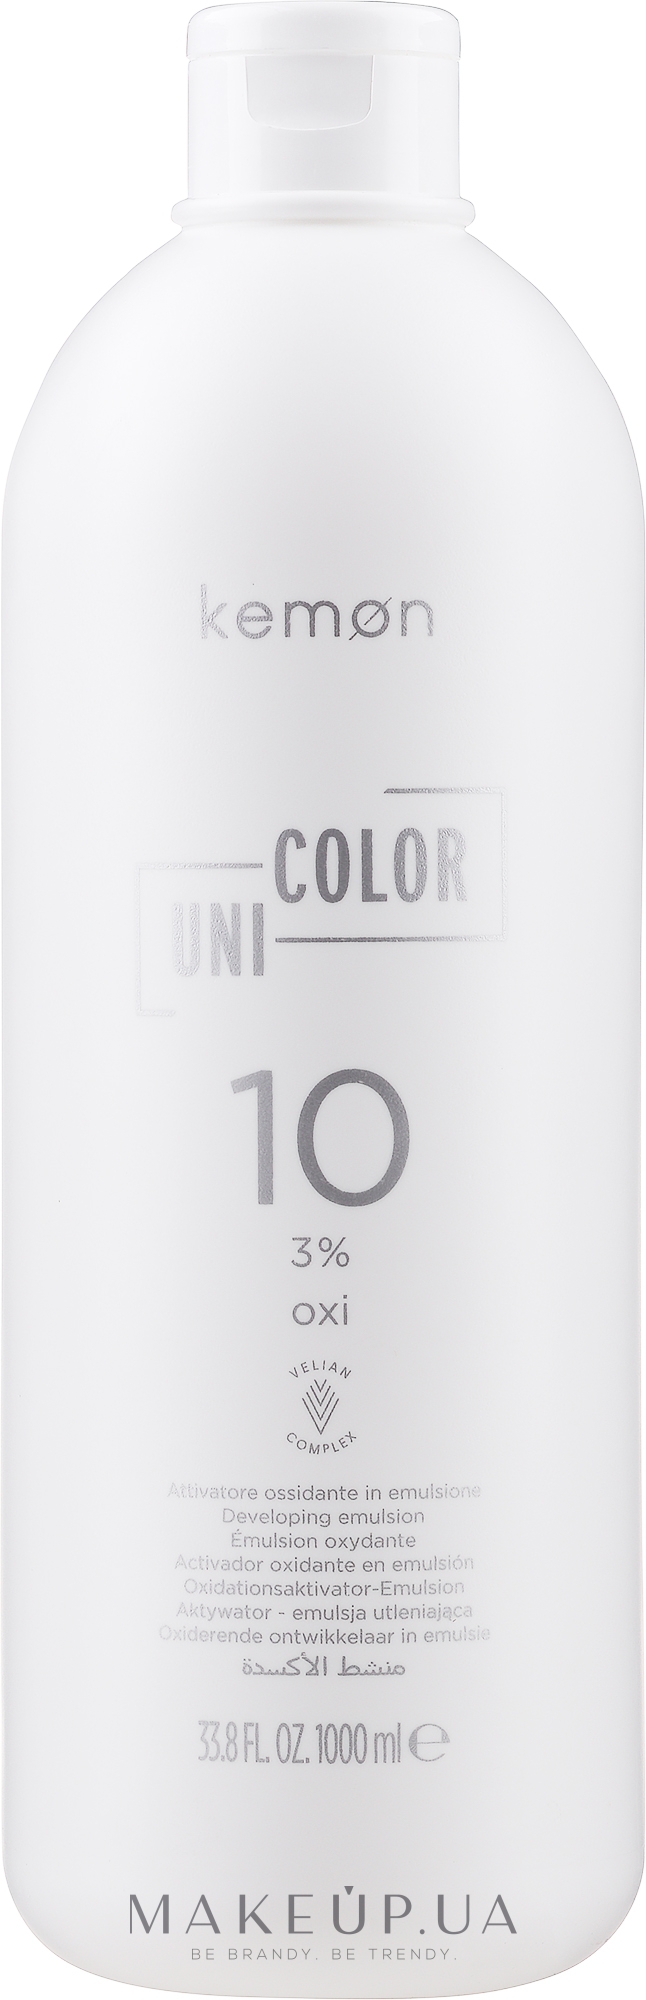 Окислювач універсальний для фарби 3% - Kemon Uni.Color Oxi — фото 1000ml